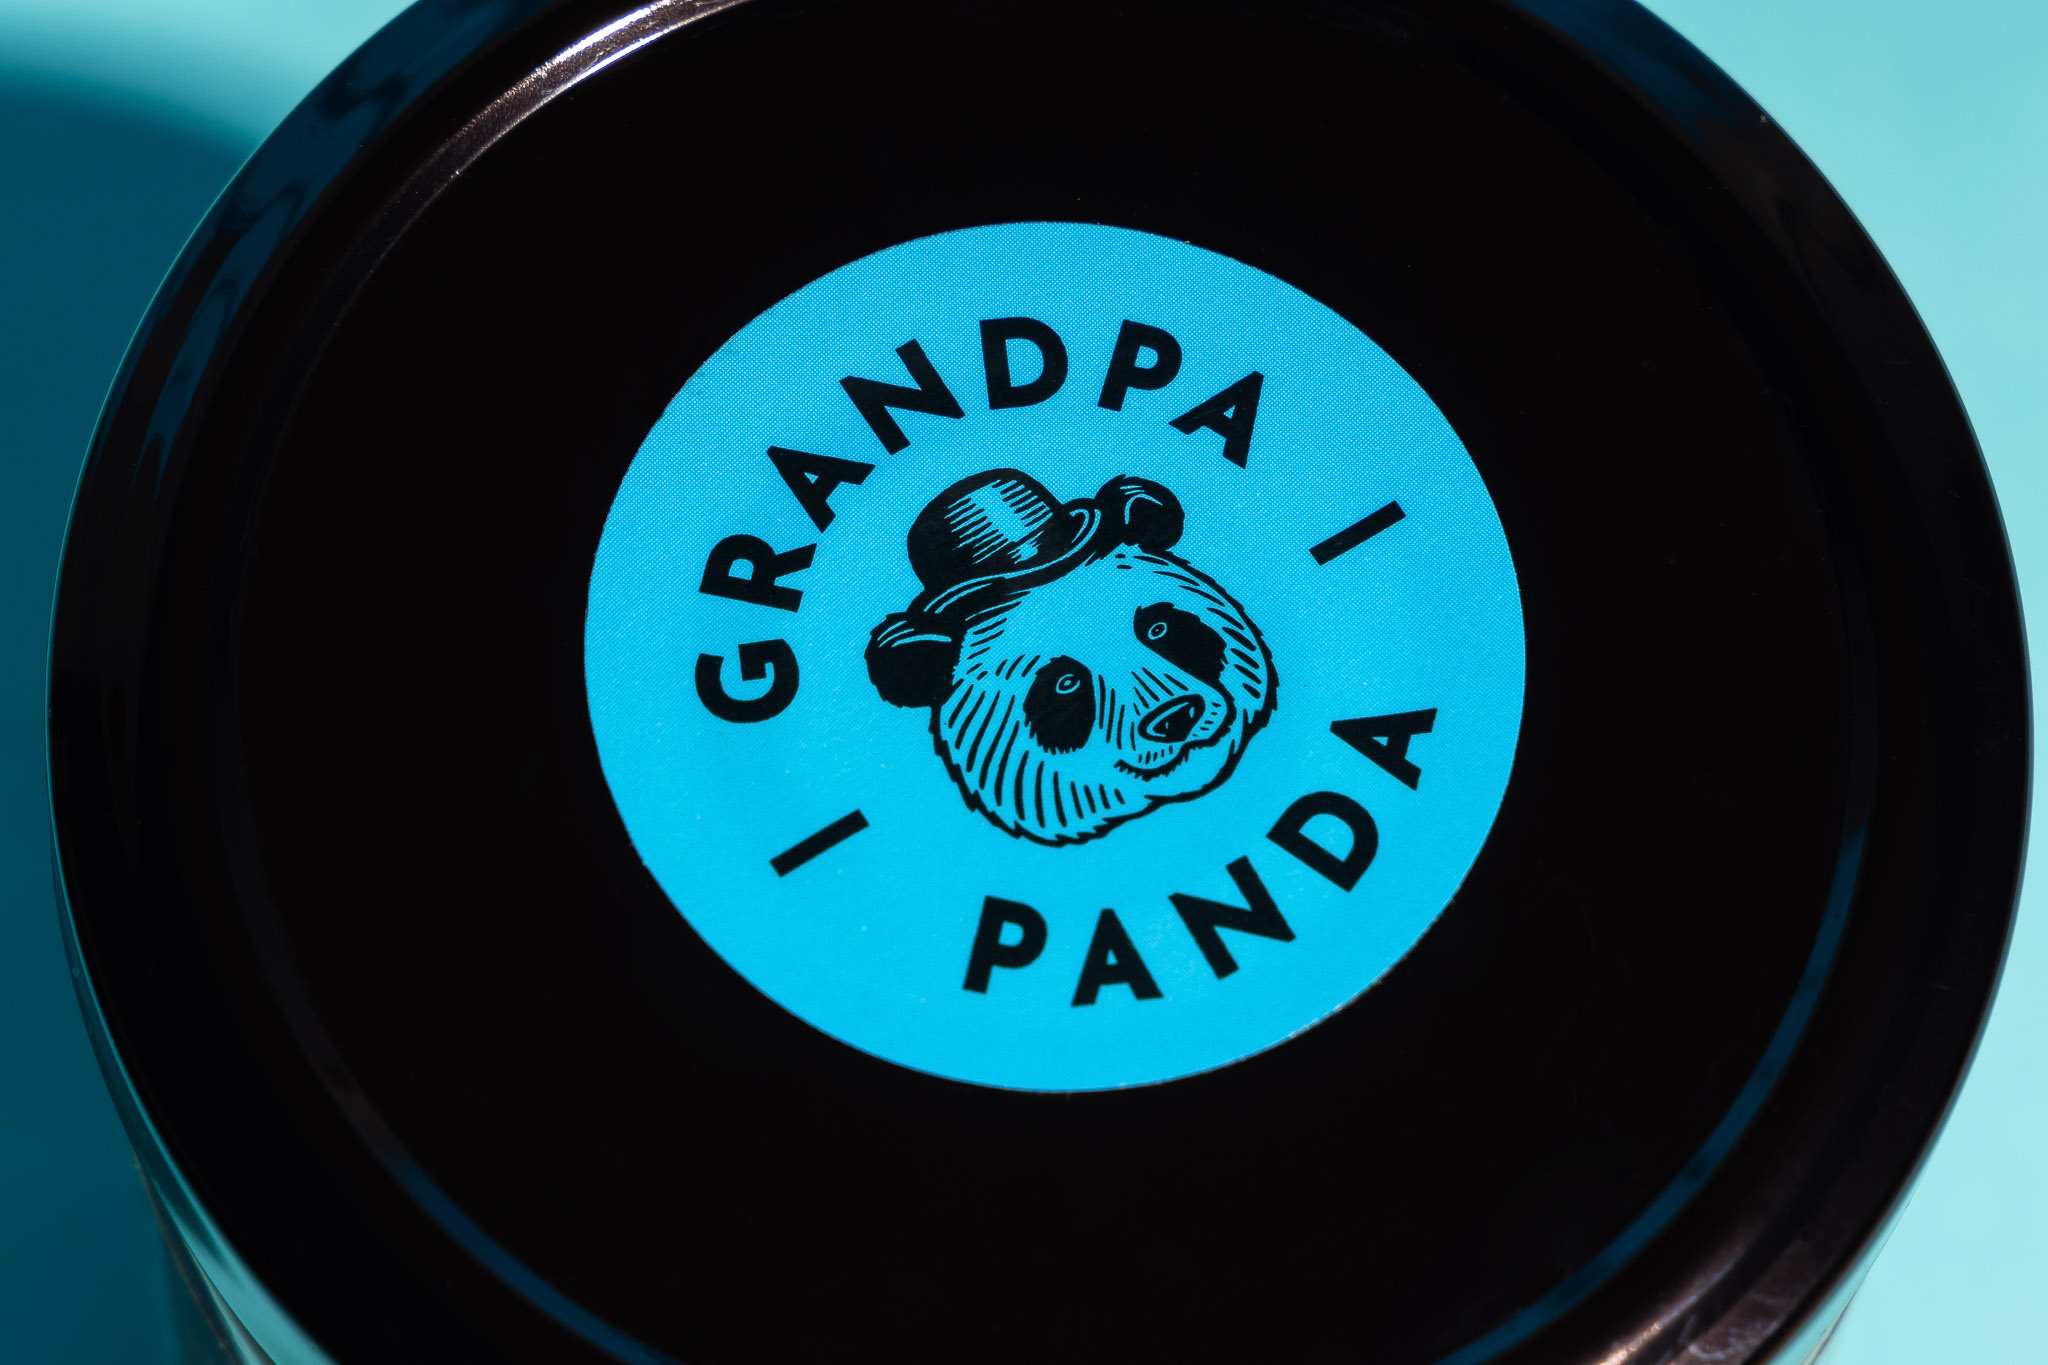 Grandpa Panda